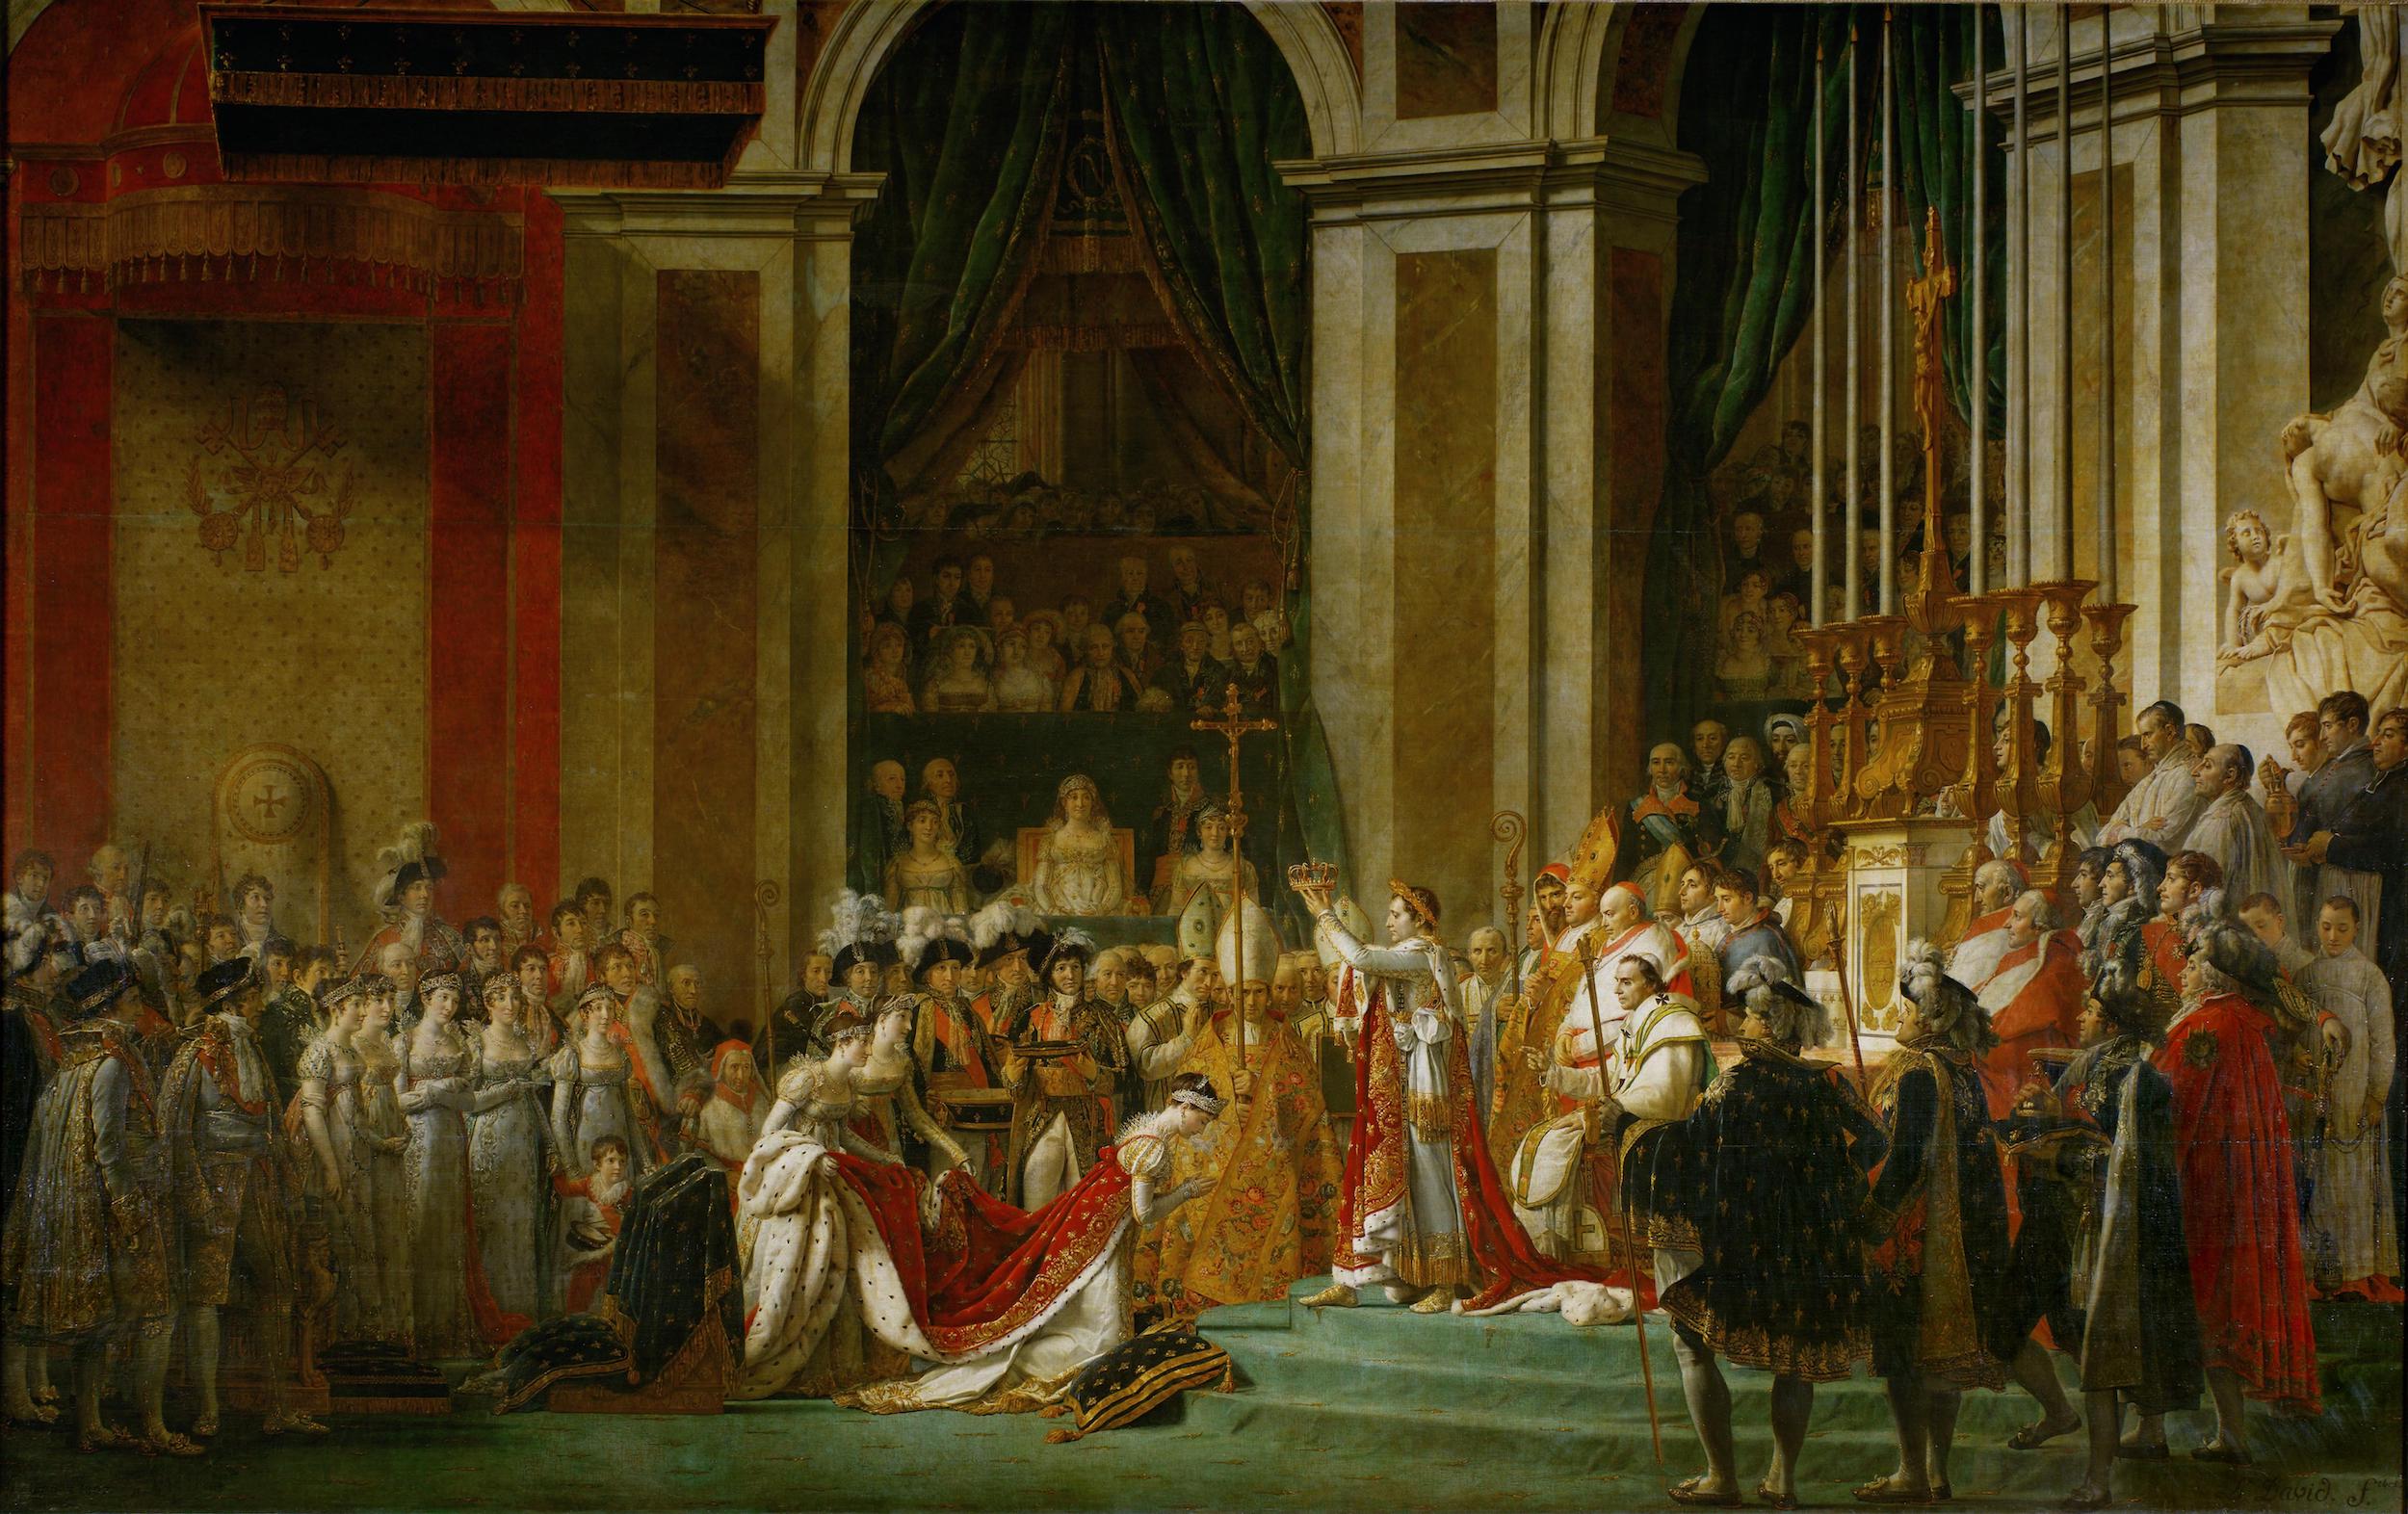 L'incoronazione dell'Imperatore Napoleone I e dell'Imperatrice Joséphine by Jacques-Louis David - 1806-1807 - 6,21 x 9.79 m Musée du Louvre